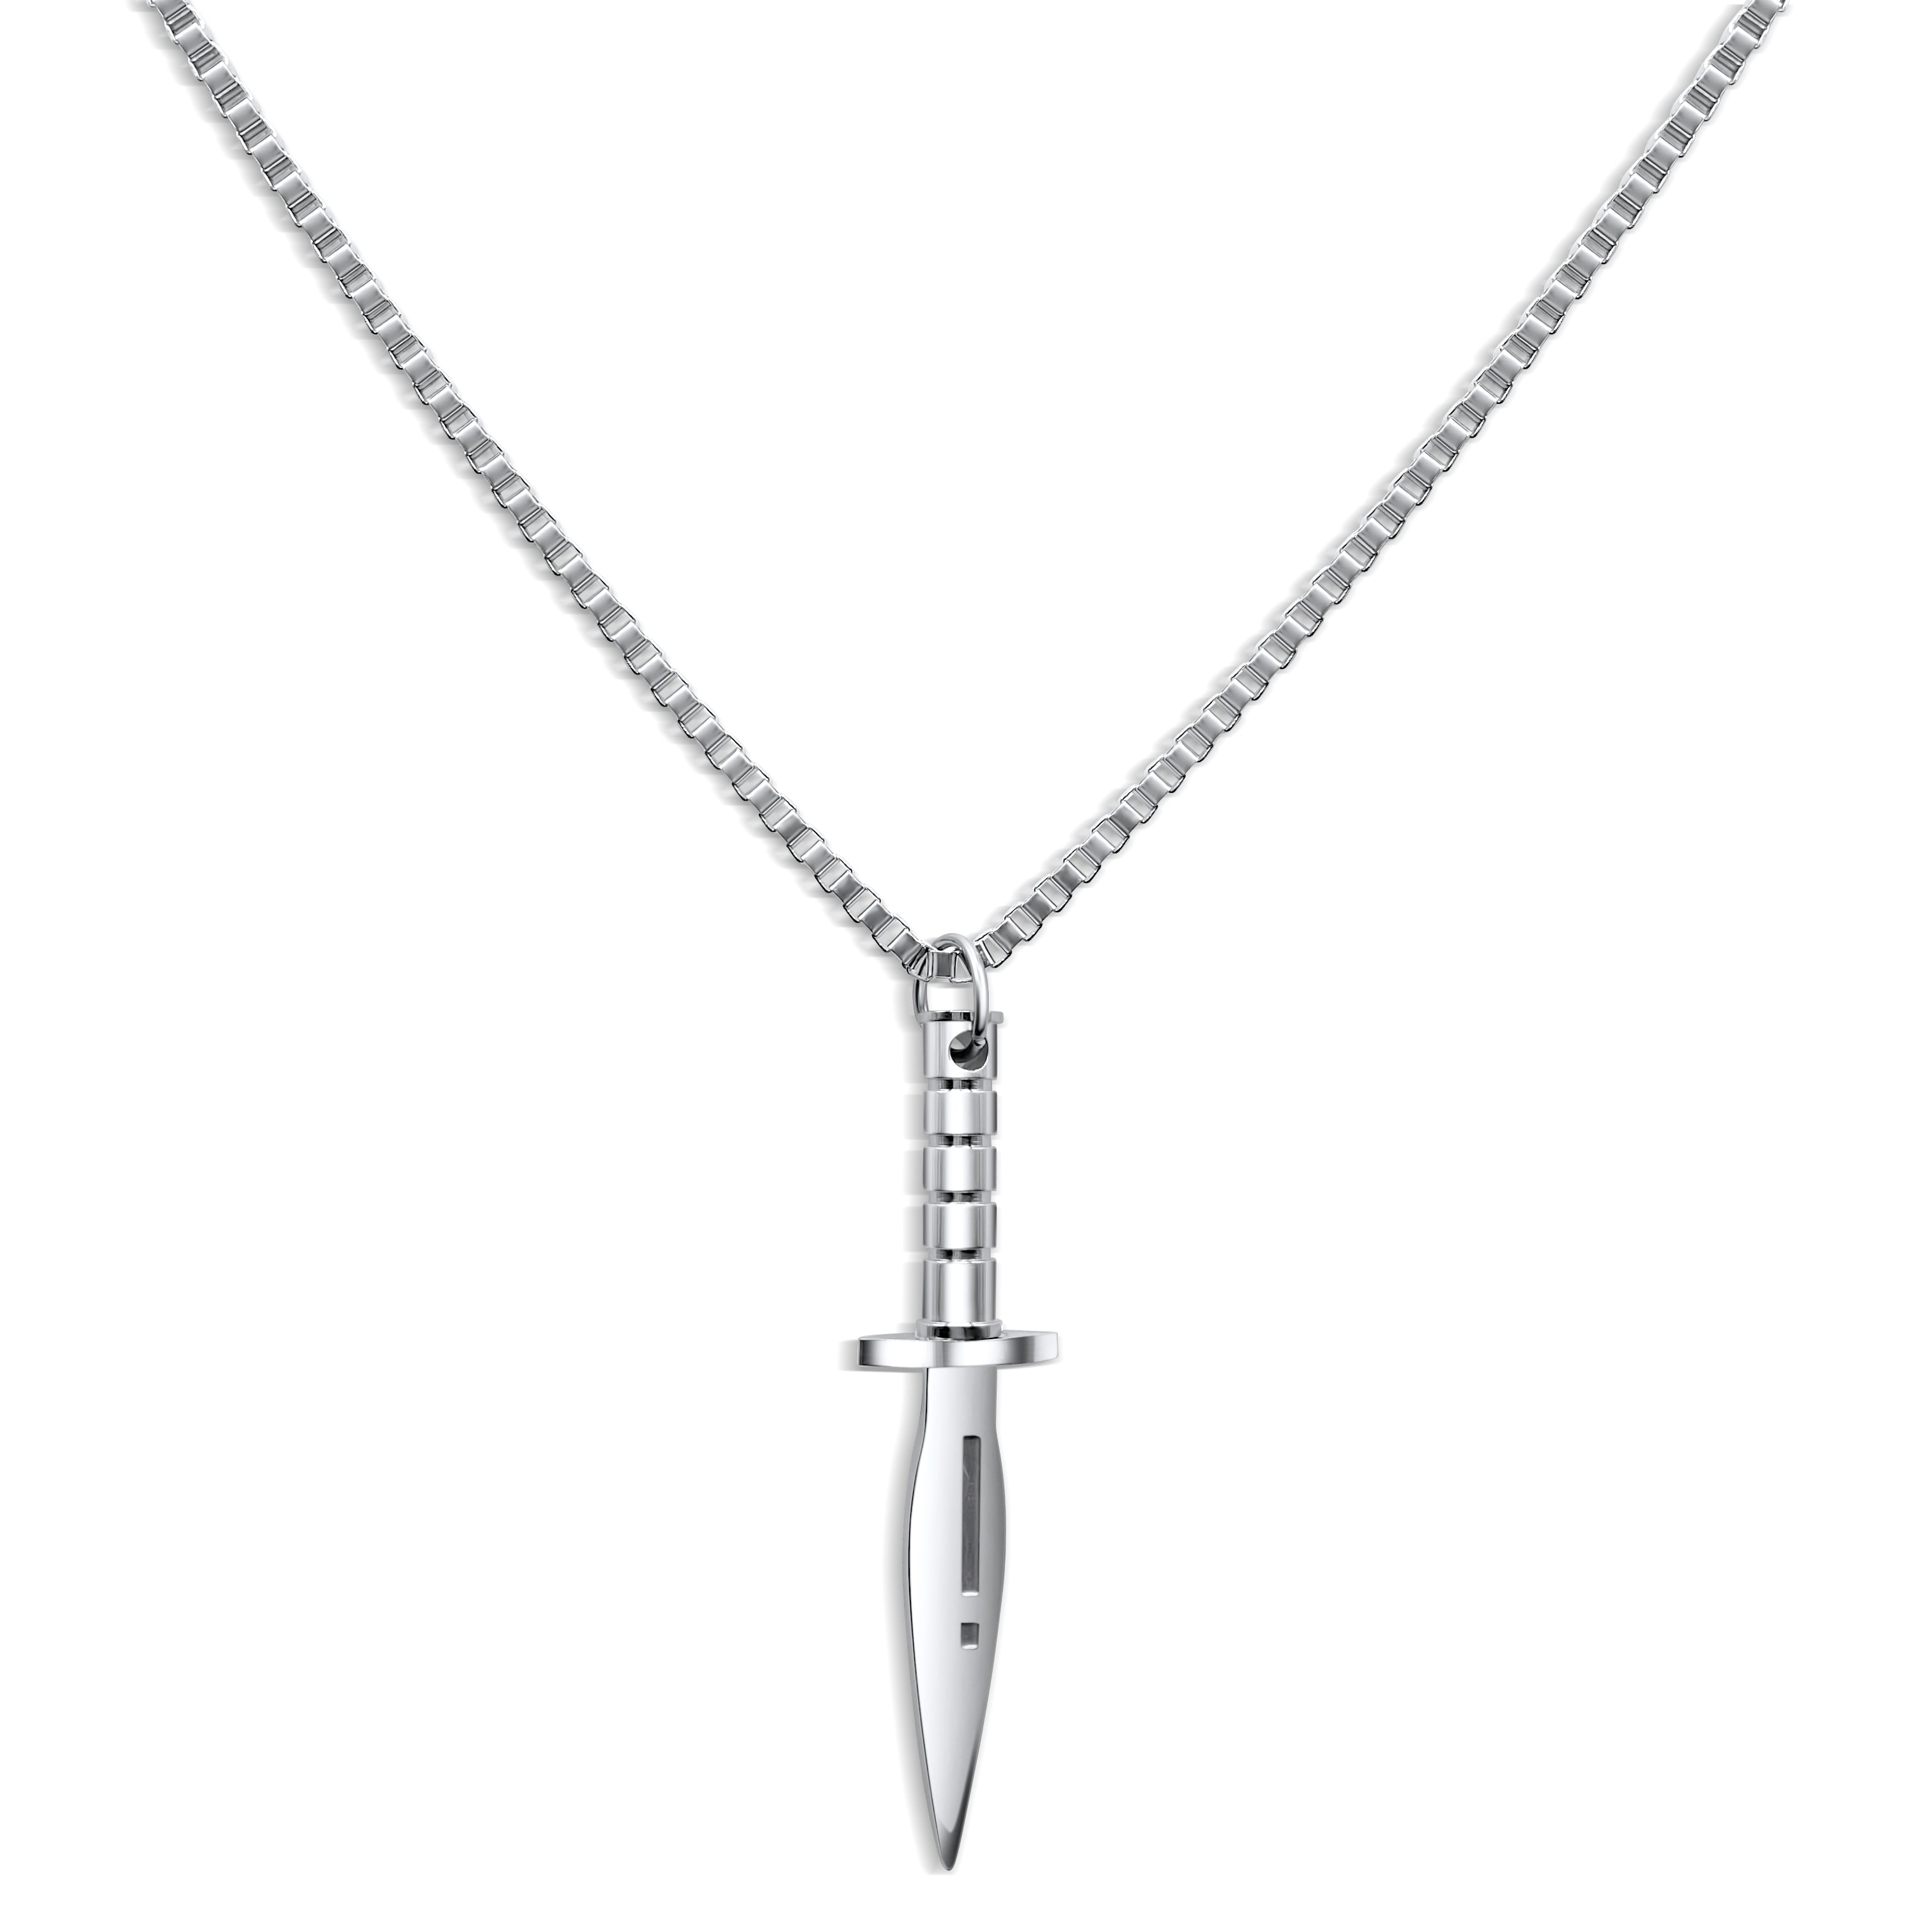 Dagger Necklace – Comparison Kills